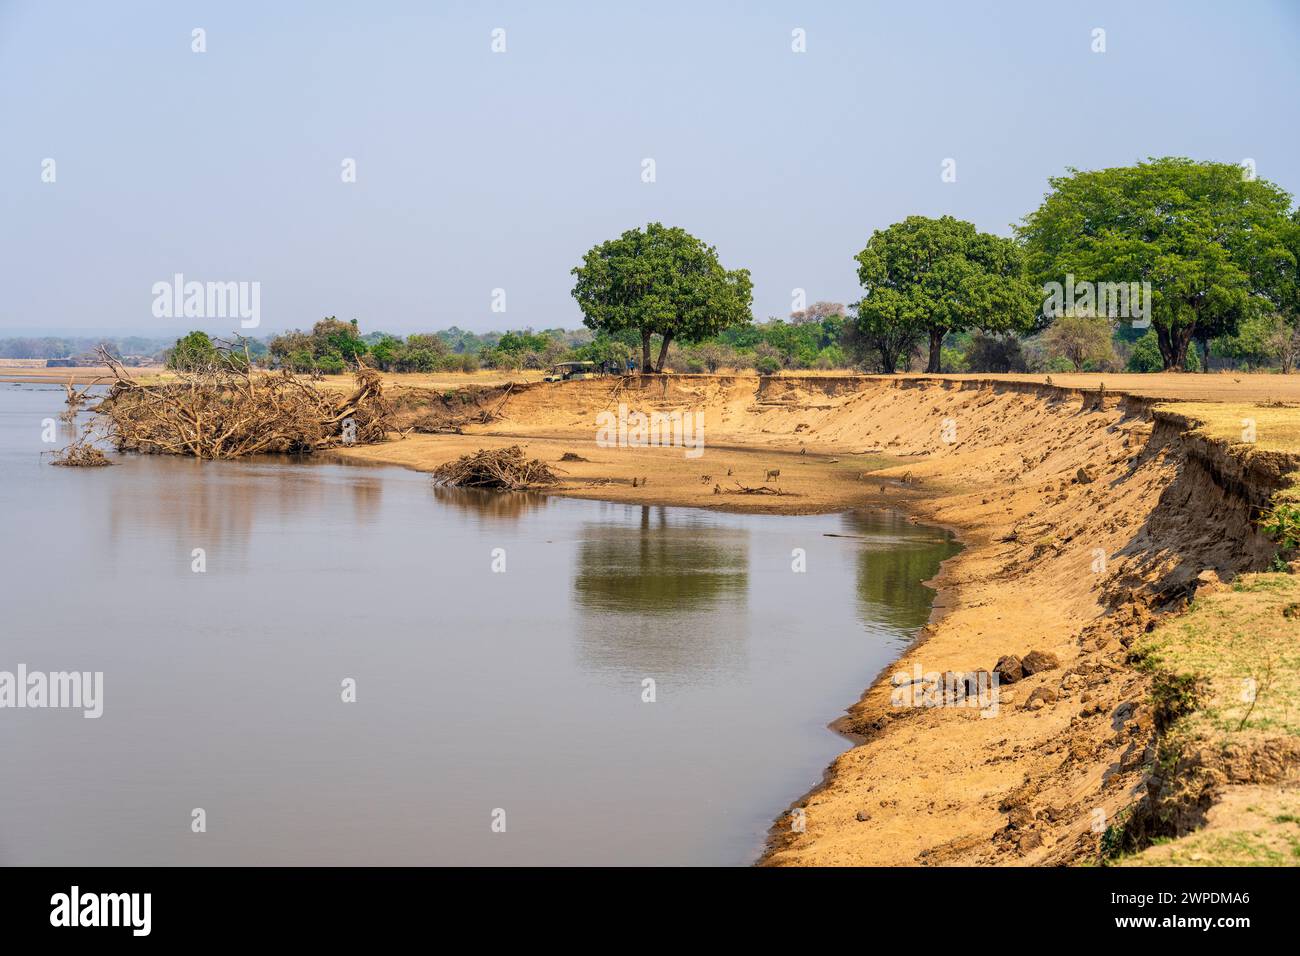 Rivière Luangwa en saison sèche dans le secteur de Mfuwe du parc national de South Luangwa en Zambie, Afrique australe Banque D'Images